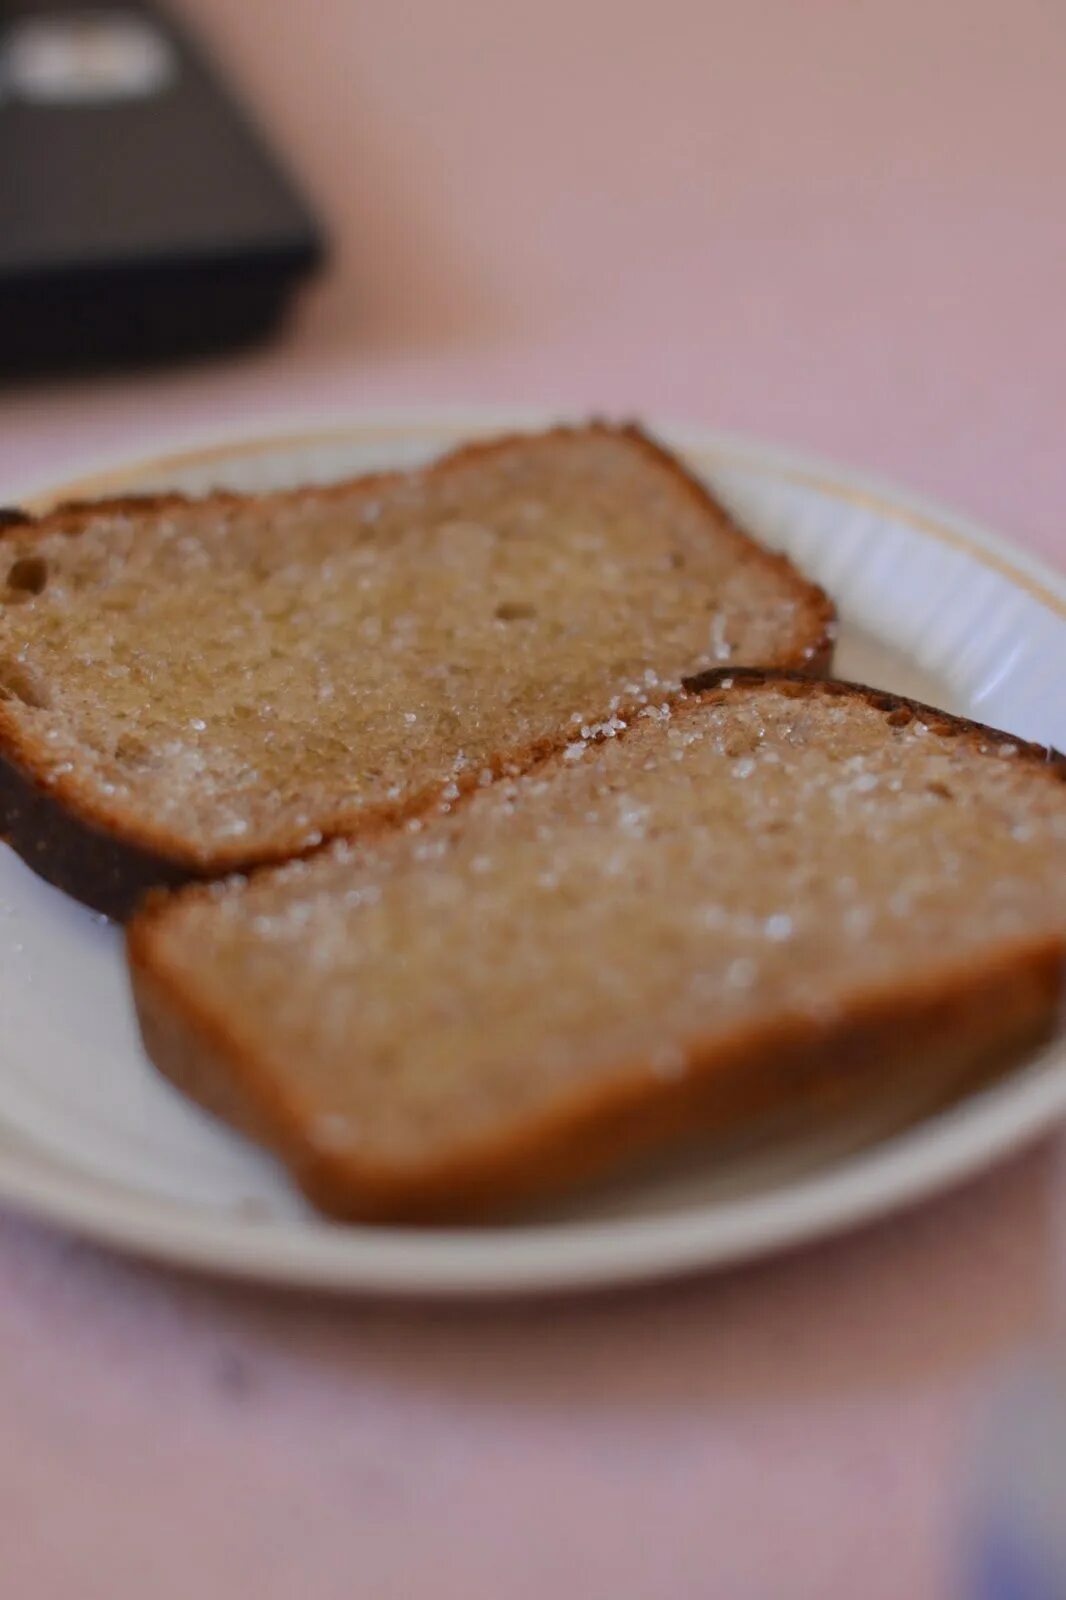 Бутерброд с маслом и сахаром. Хлеб с маслом и солью. Бутерброд с подсолнечным маслом. Хлеб с растительным маслом. Черный хлеб с подсолнечным маслом